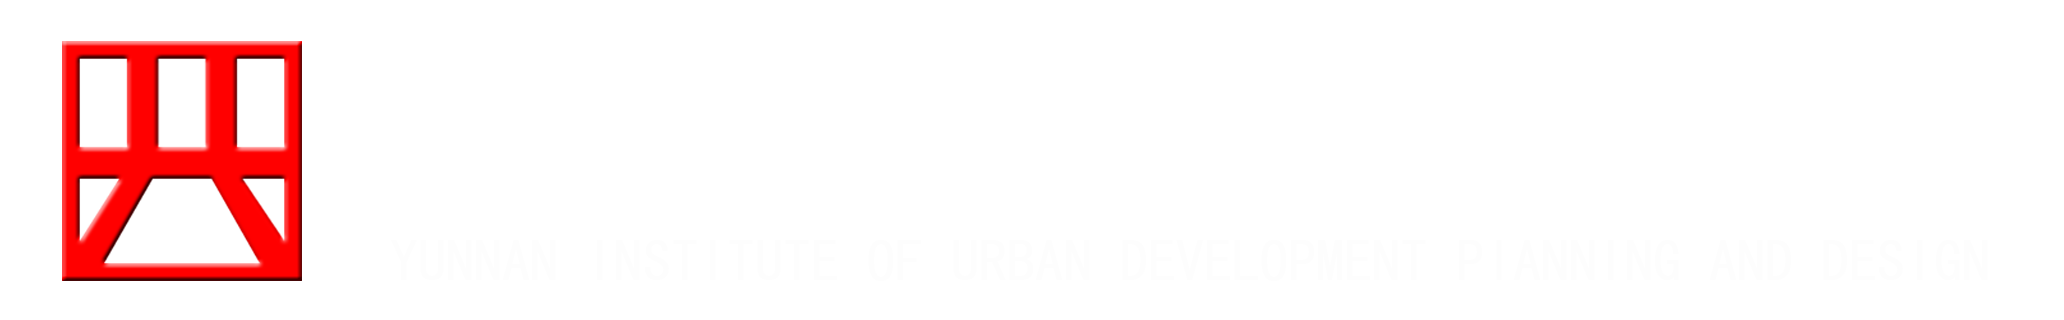 十大娱乐平台排行榜logo1